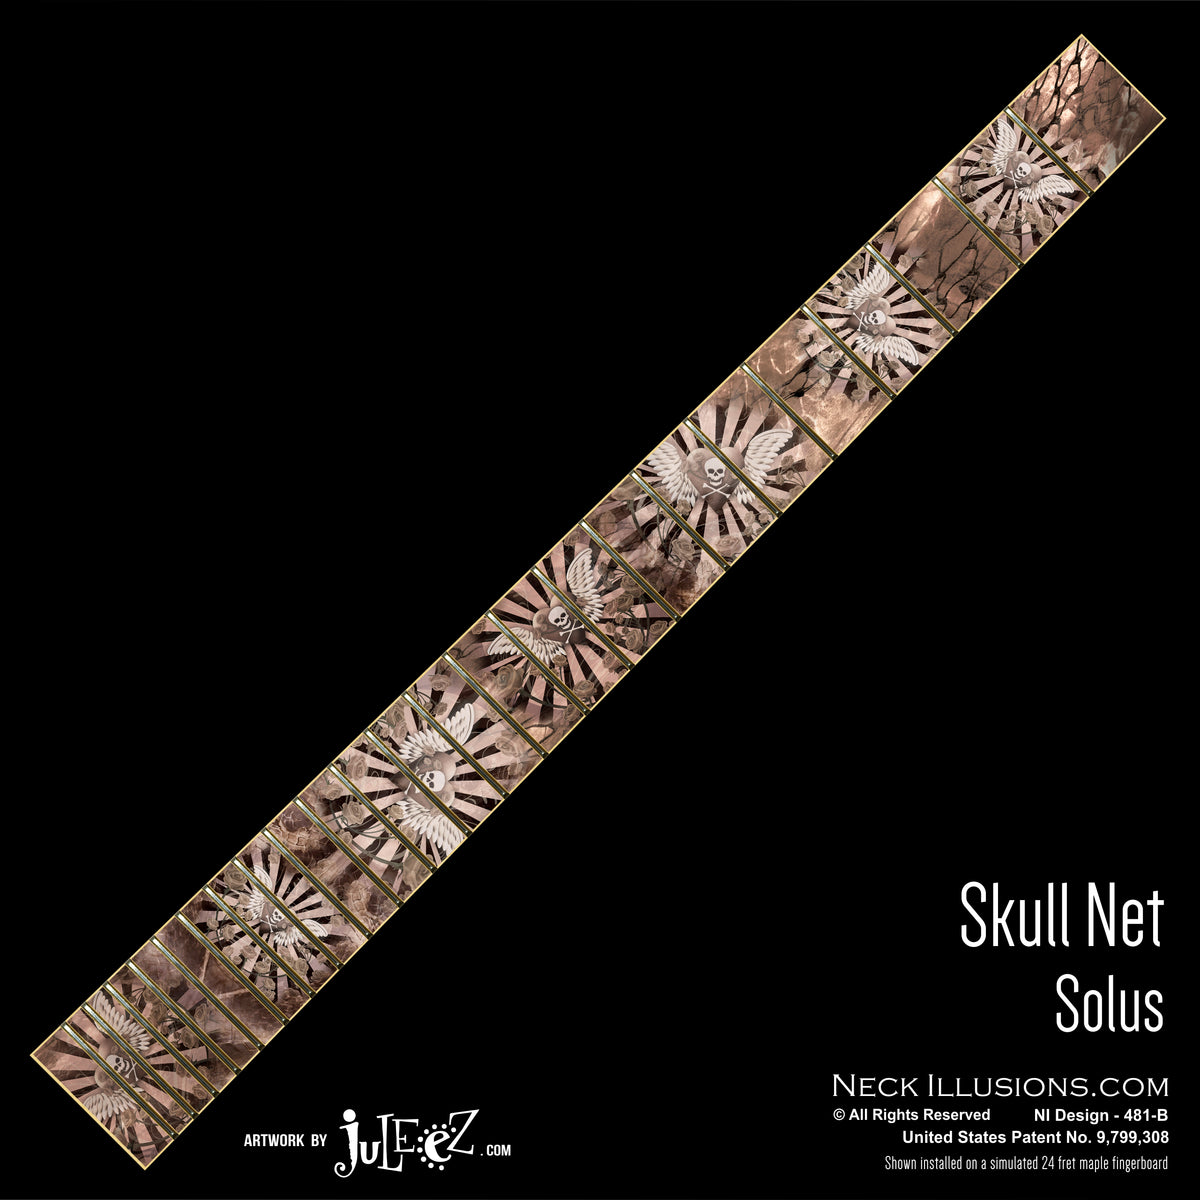 Skull Net - by Juleez